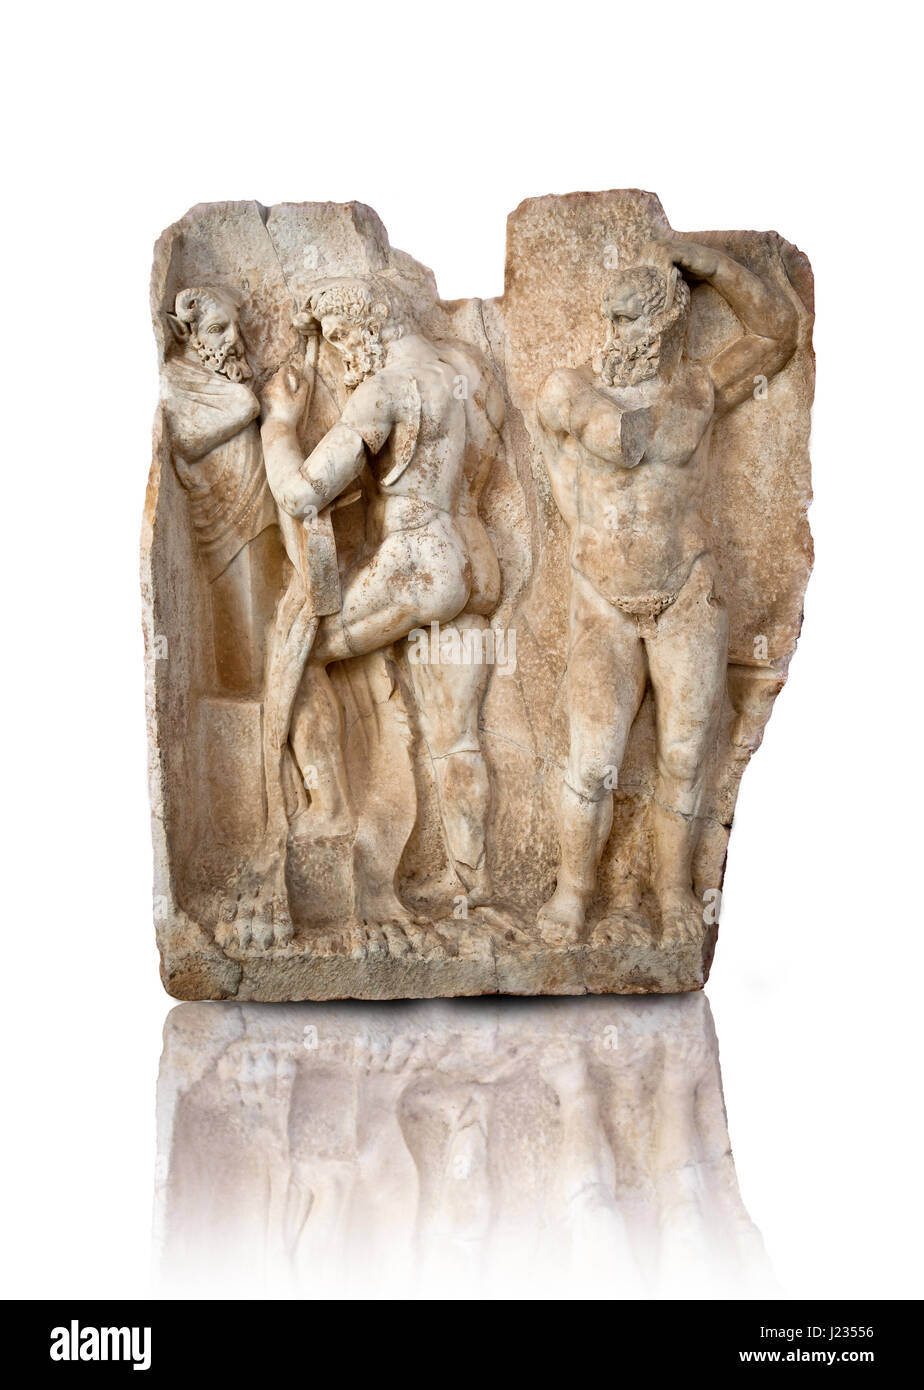 Foto von römischen Relief Skulptur, Aphrodisias, Türkei, Bilder der römischen Kunst Flachreliefs.  Herakles bereitet sich auf die libyschen Riesen Antaios Ringen. Ihr Stockfoto